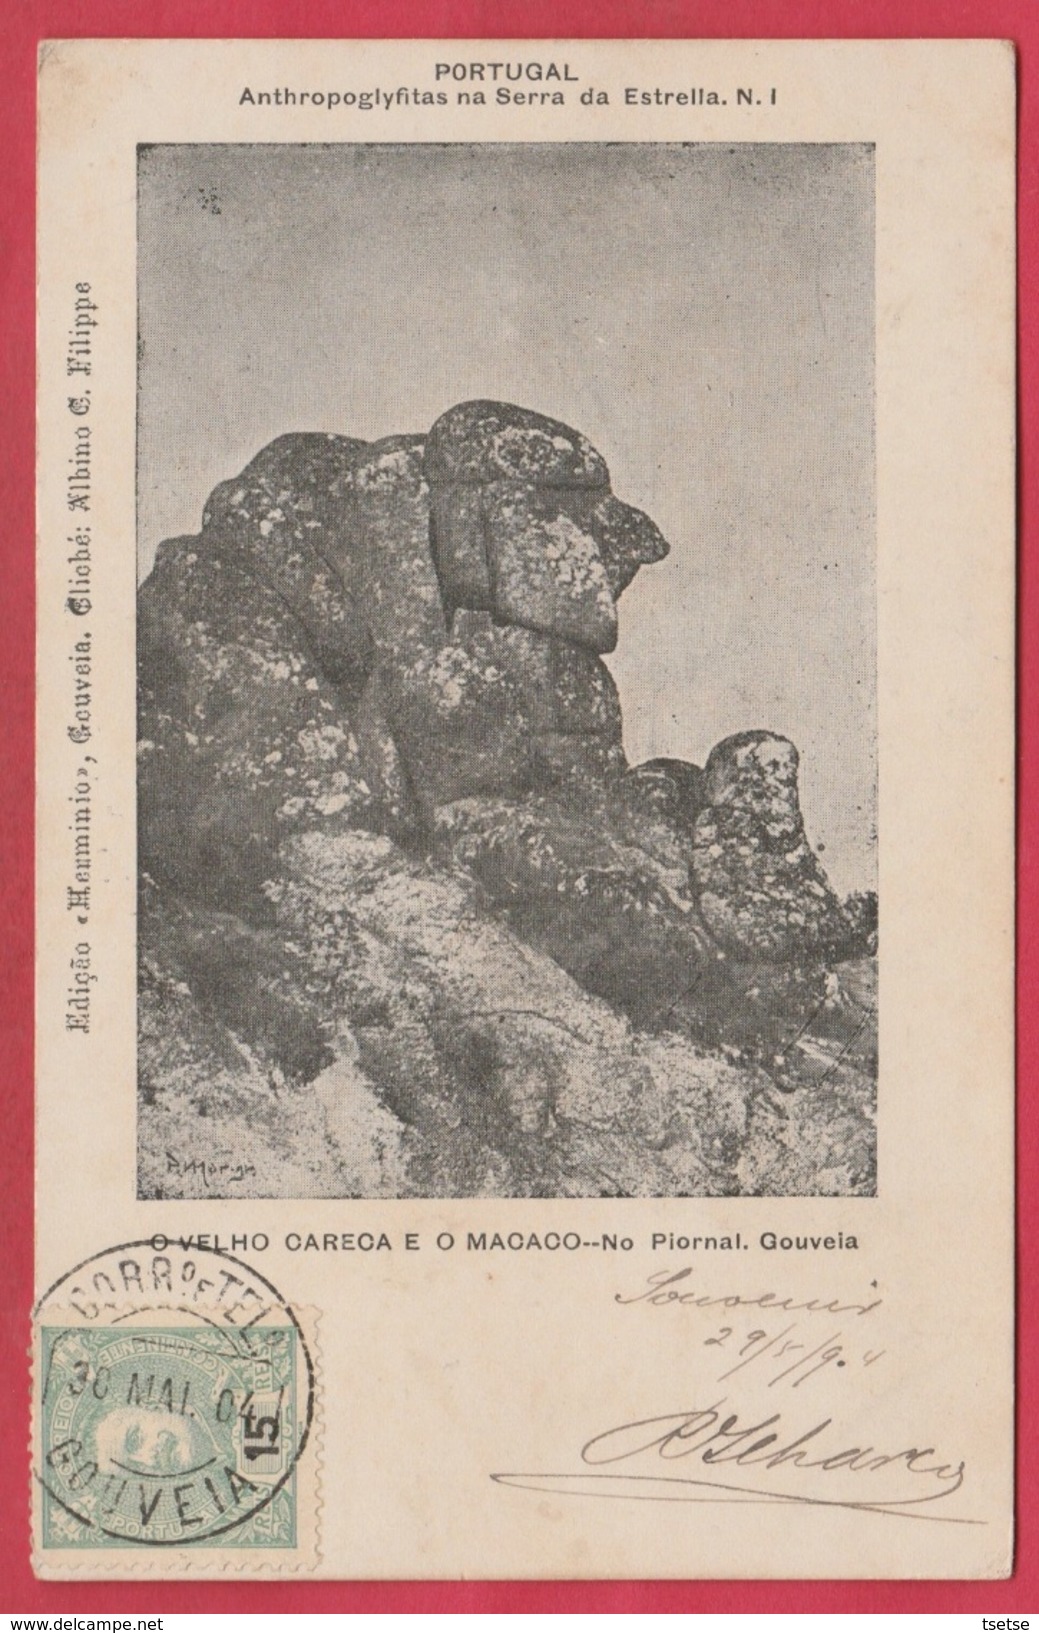 Portugal - Gouveia -O Velho Carceca E O Macaco -Anthopoglyfitas  Na Serra Da Estrella  -1904 ( See Always Reverse ) - Guarda